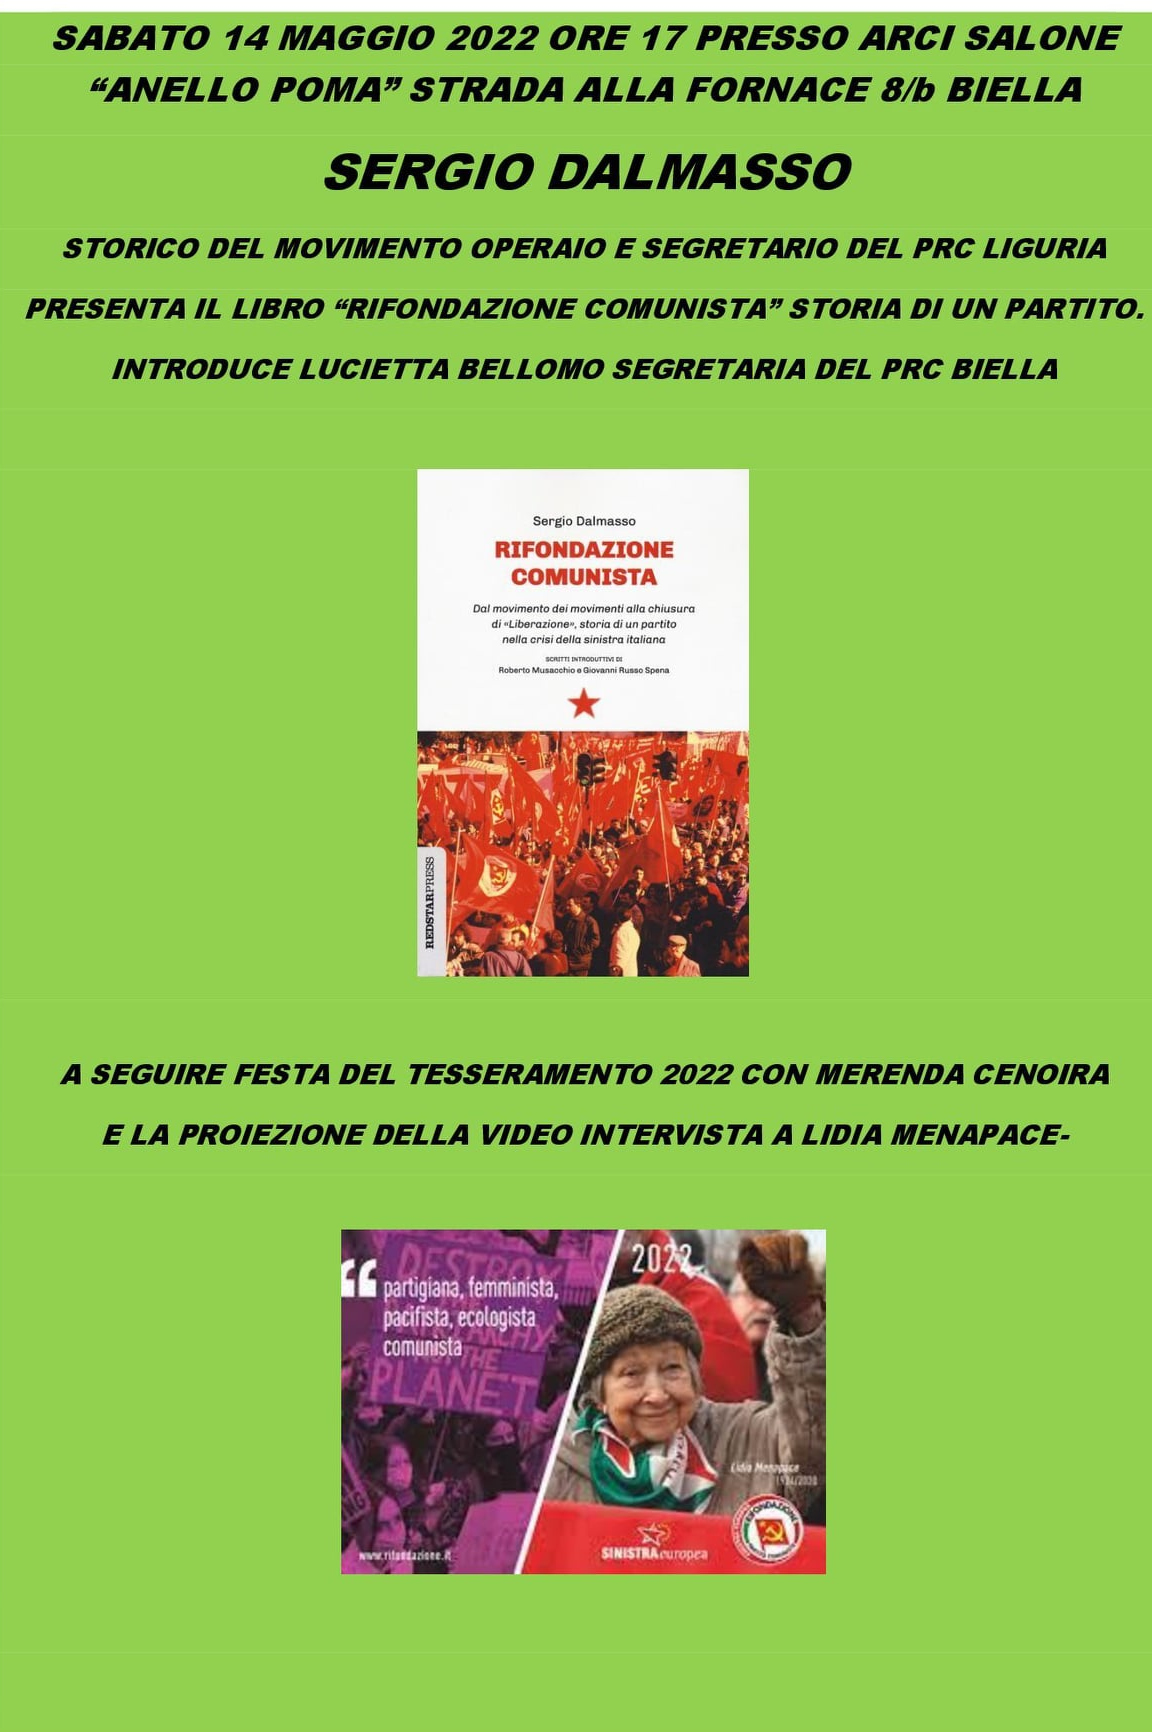 Sergio Dalmasso a Biella presenta il suo libro sulla Storia di Rifondazione Comunista